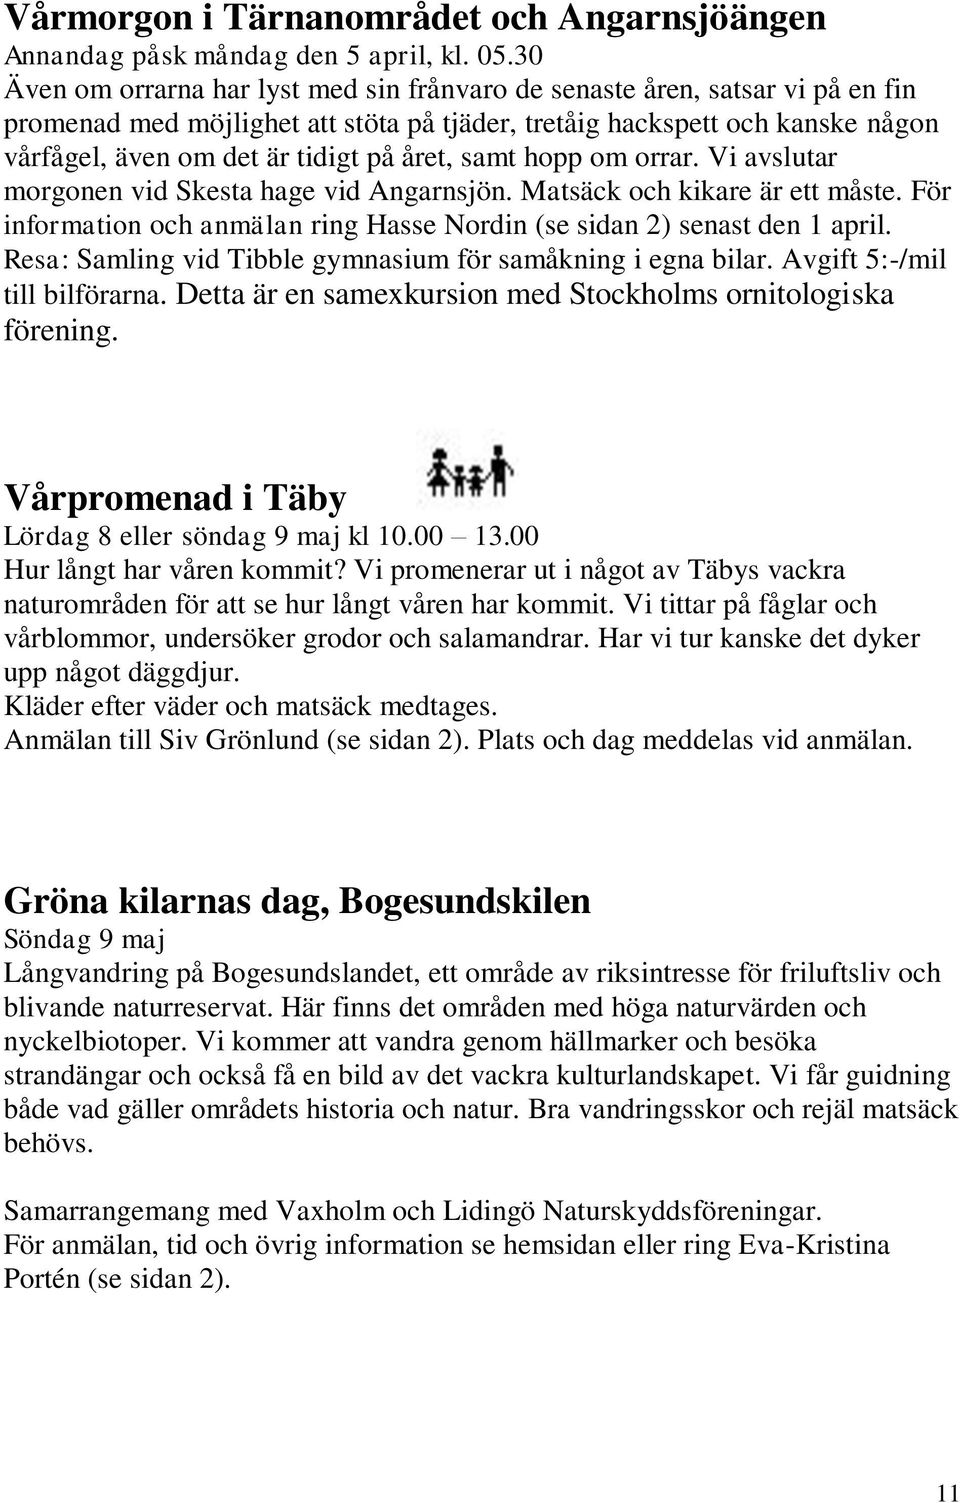 året, samt hopp om orrar. Vi avslutar morgonen vid Skesta hage vid Angarnsjön. Matsäck och kikare är ett måste. För information och anmälan ring Hasse Nordin (se sidan 2) senast den 1 april.